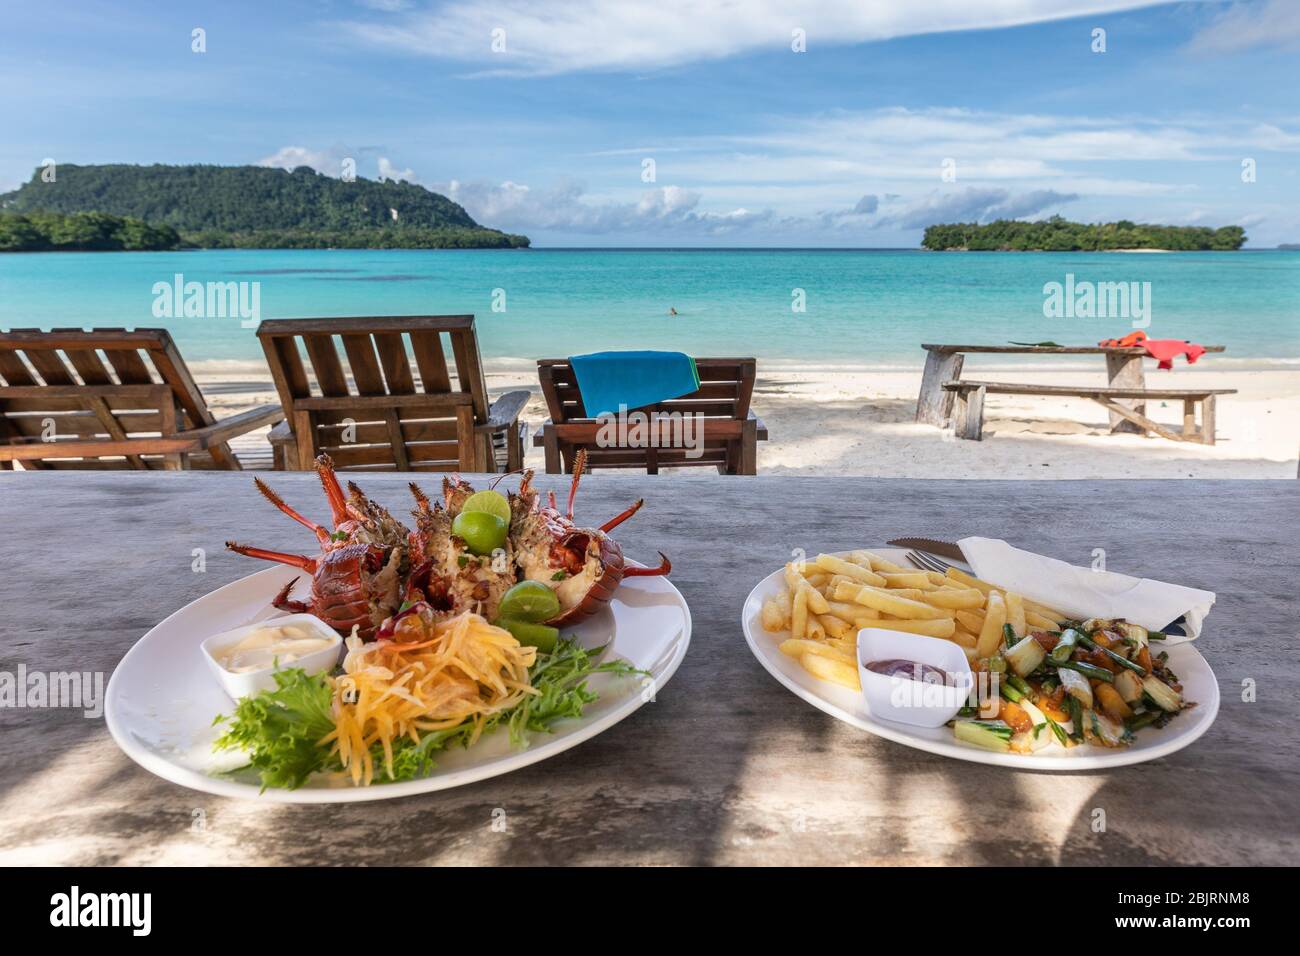 aragosta con patatine fritte sul ristorante sulla spiaggia con splendida vista del paradiso della laguna blu Foto Stock